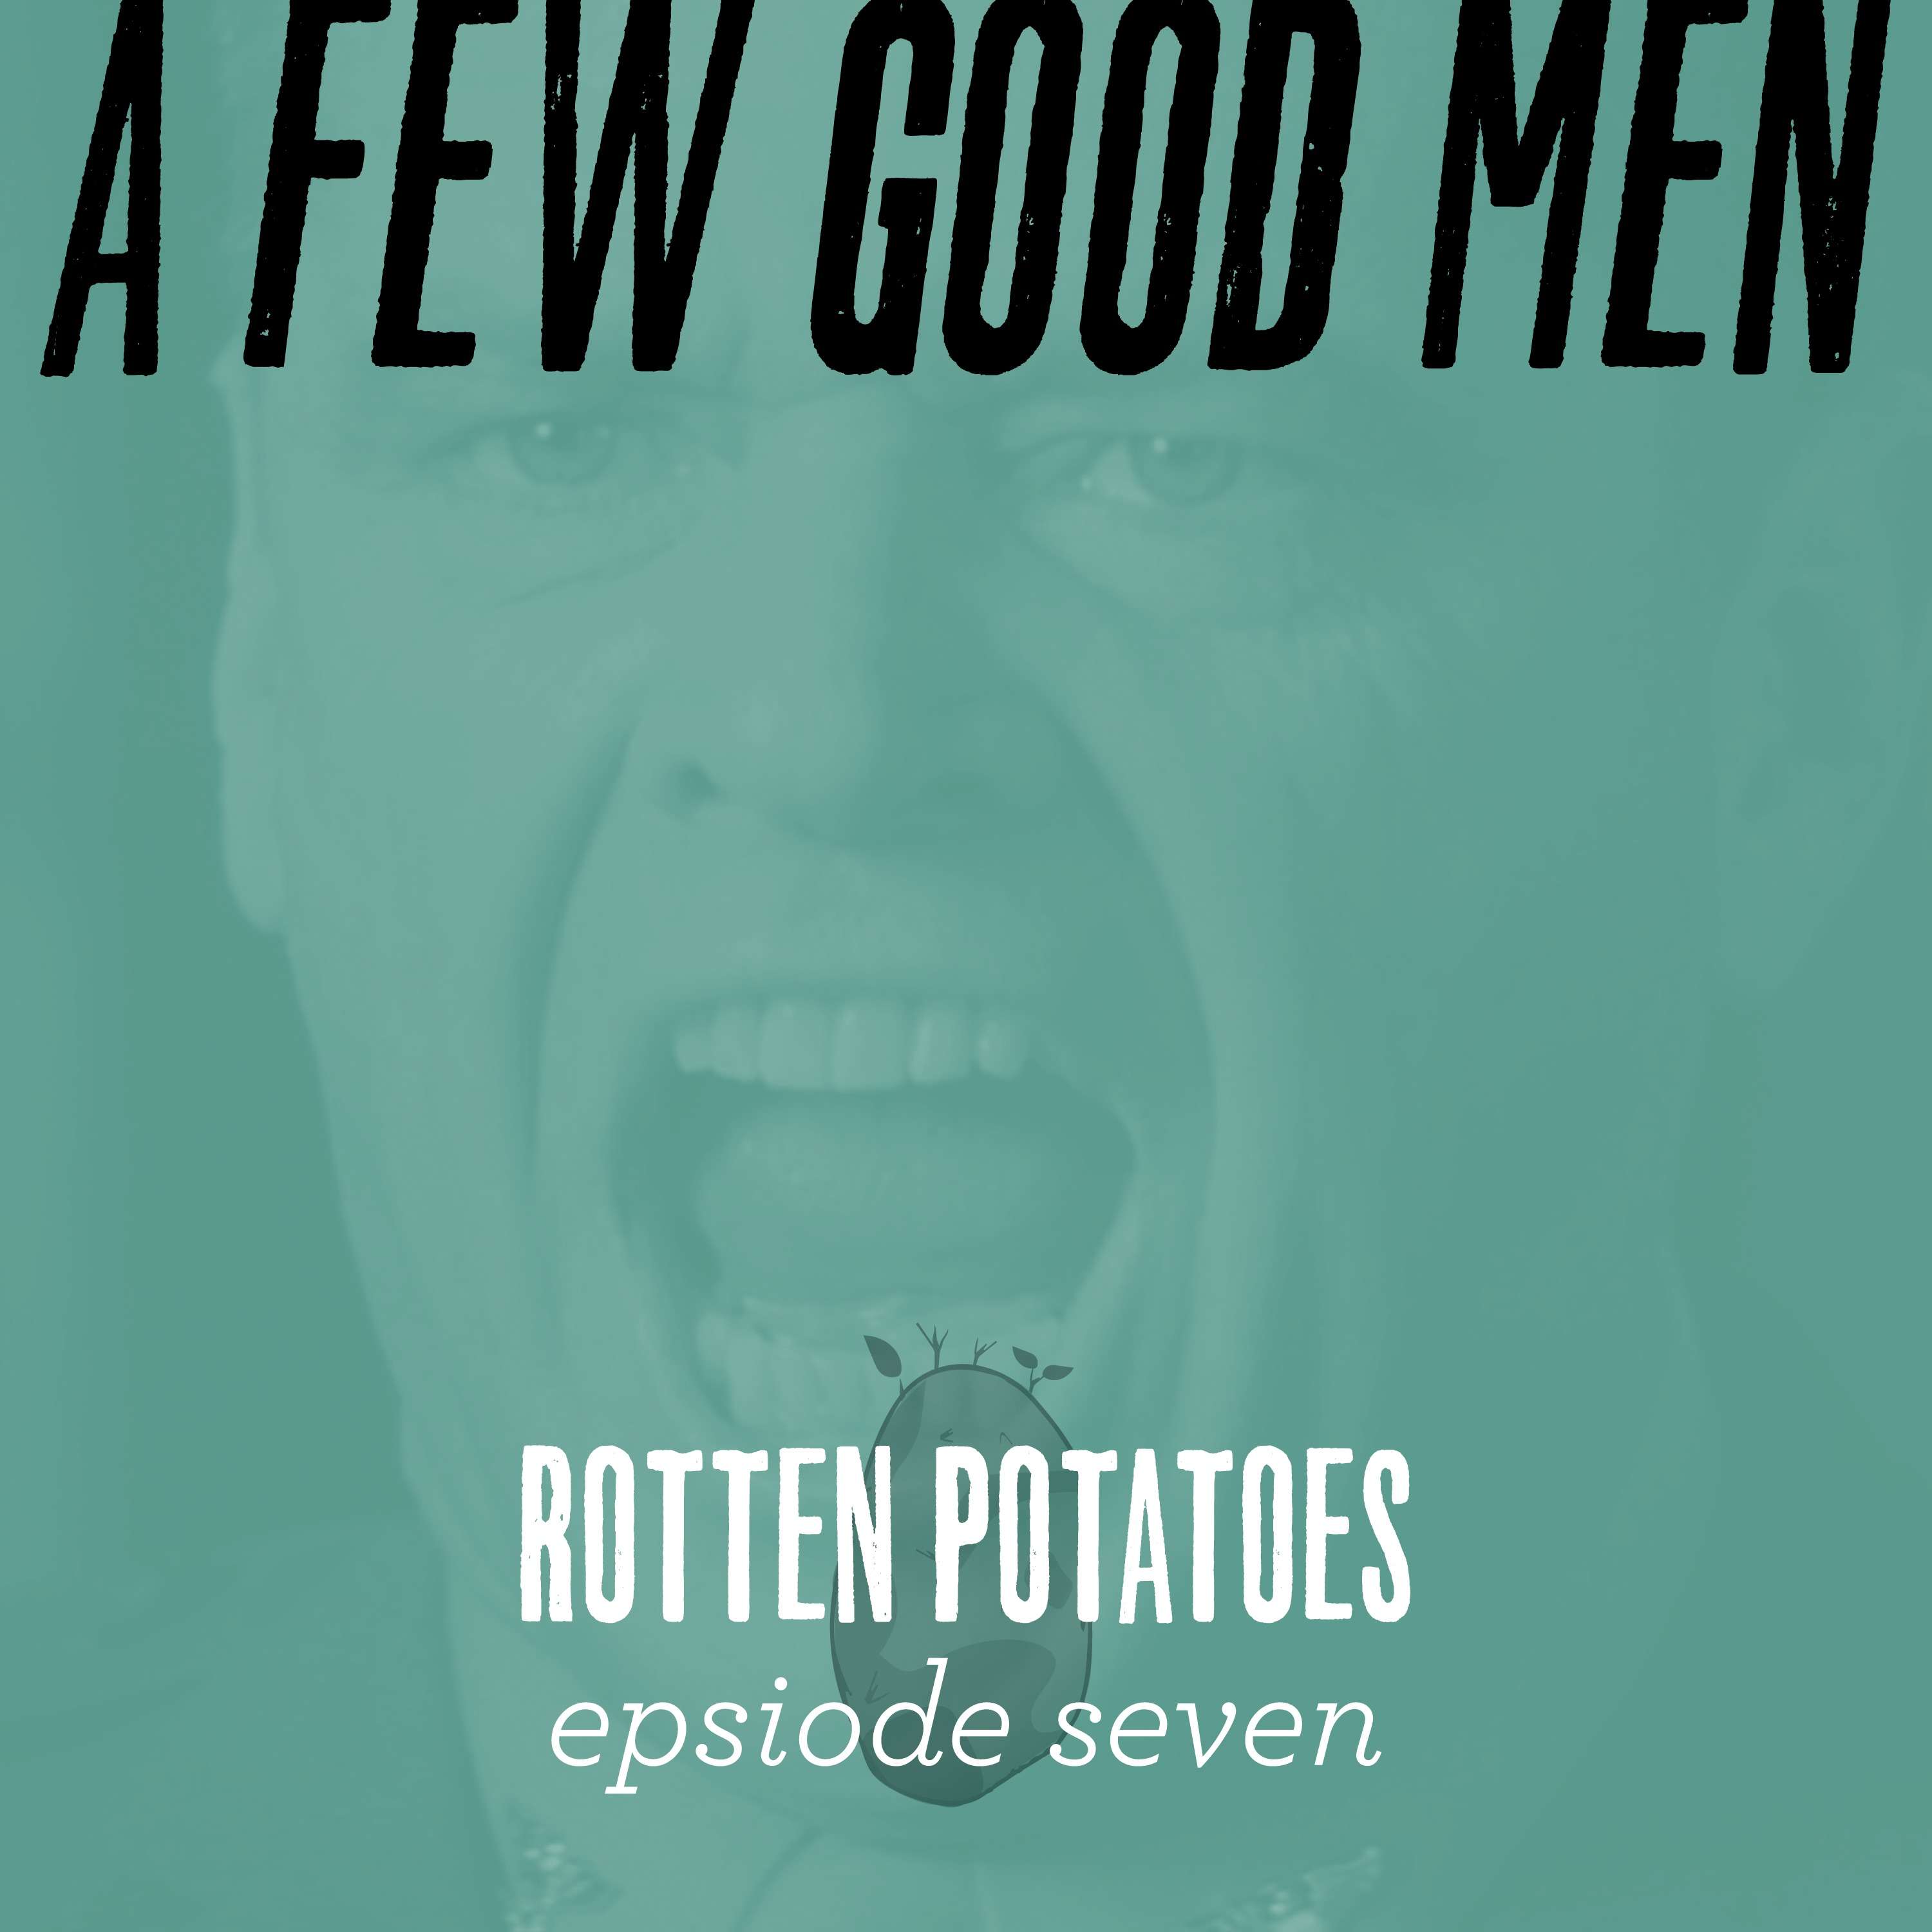 Ep 7: A Few Good Men